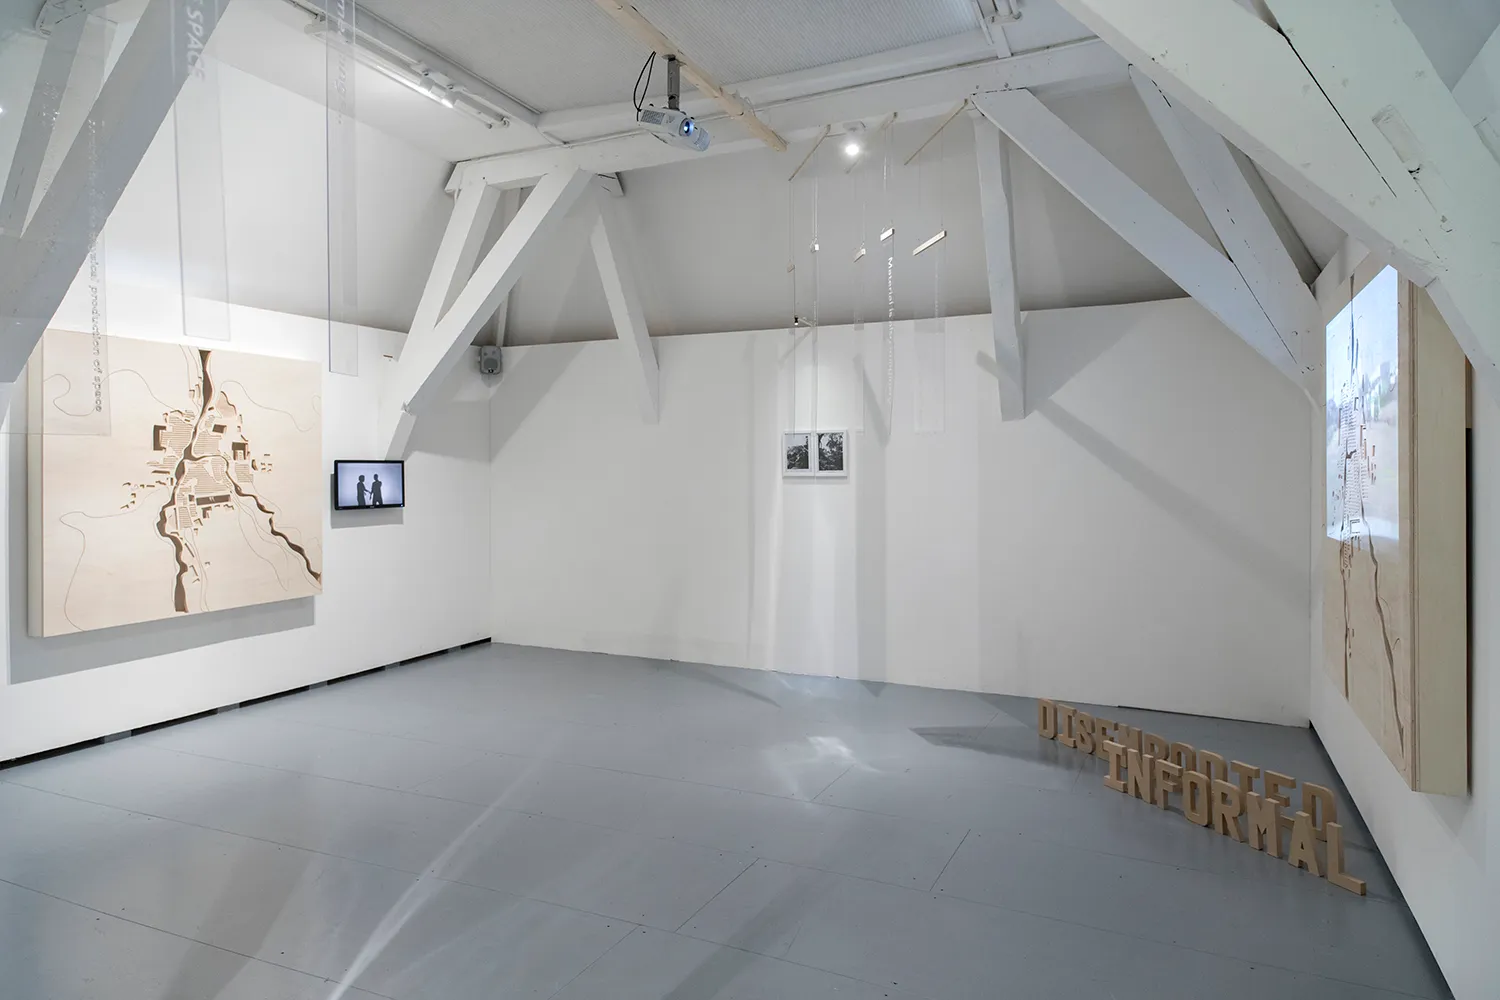 Tentoonstellingsruimte met de 2 gesneden houten planken, klein scherm, 2 fotolijsten, plexiglas stroken die aan het plafond hangen en letters 'disembodied informal' op de vloer